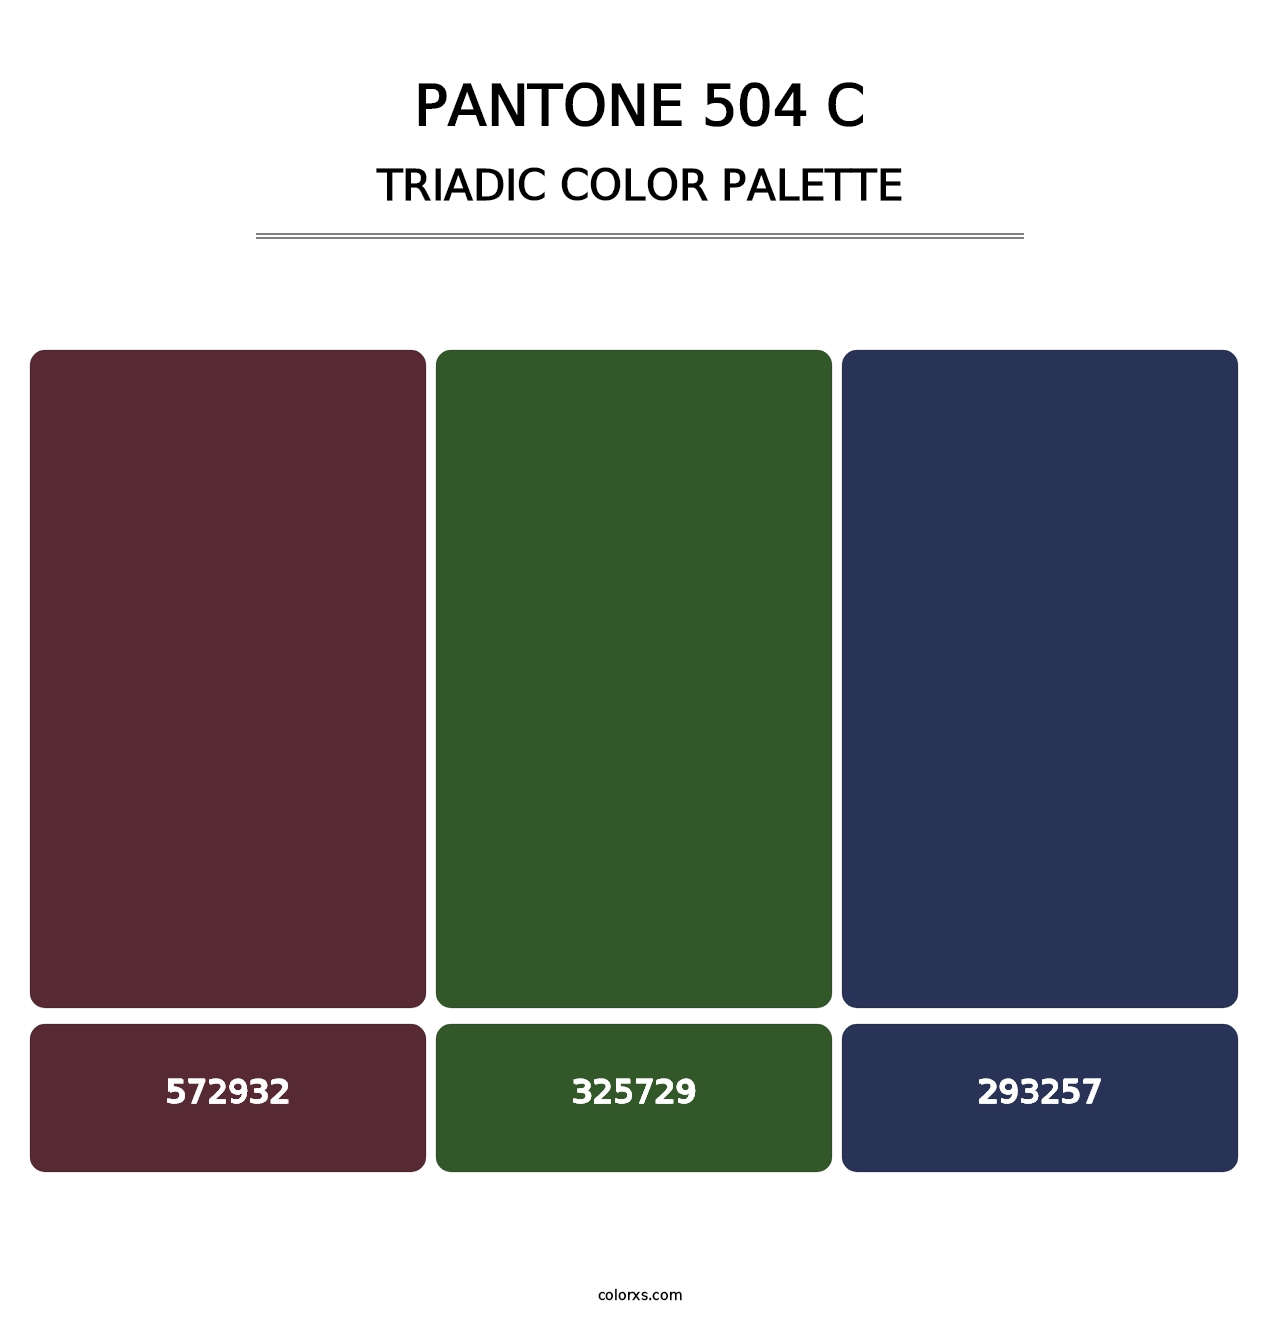 PANTONE 504 C - Triadic Color Palette